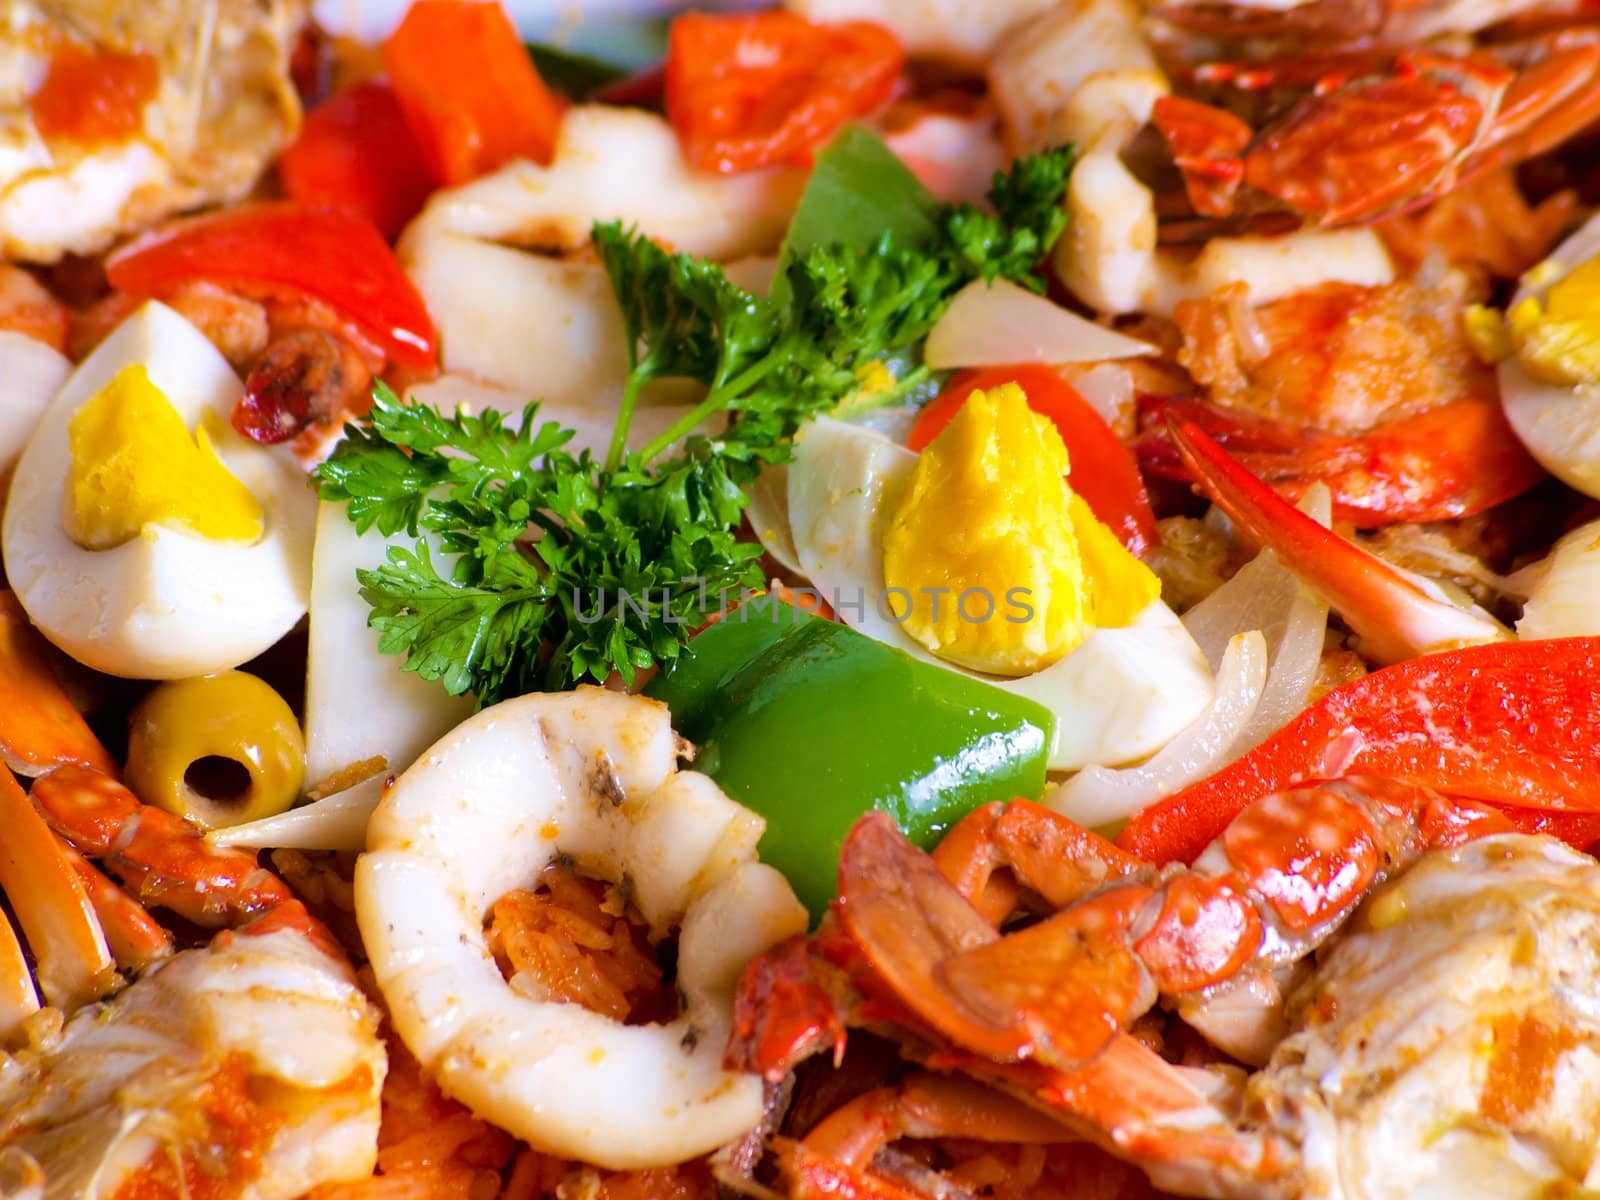  Delicious Seafood paella  by cocoyjurado9000